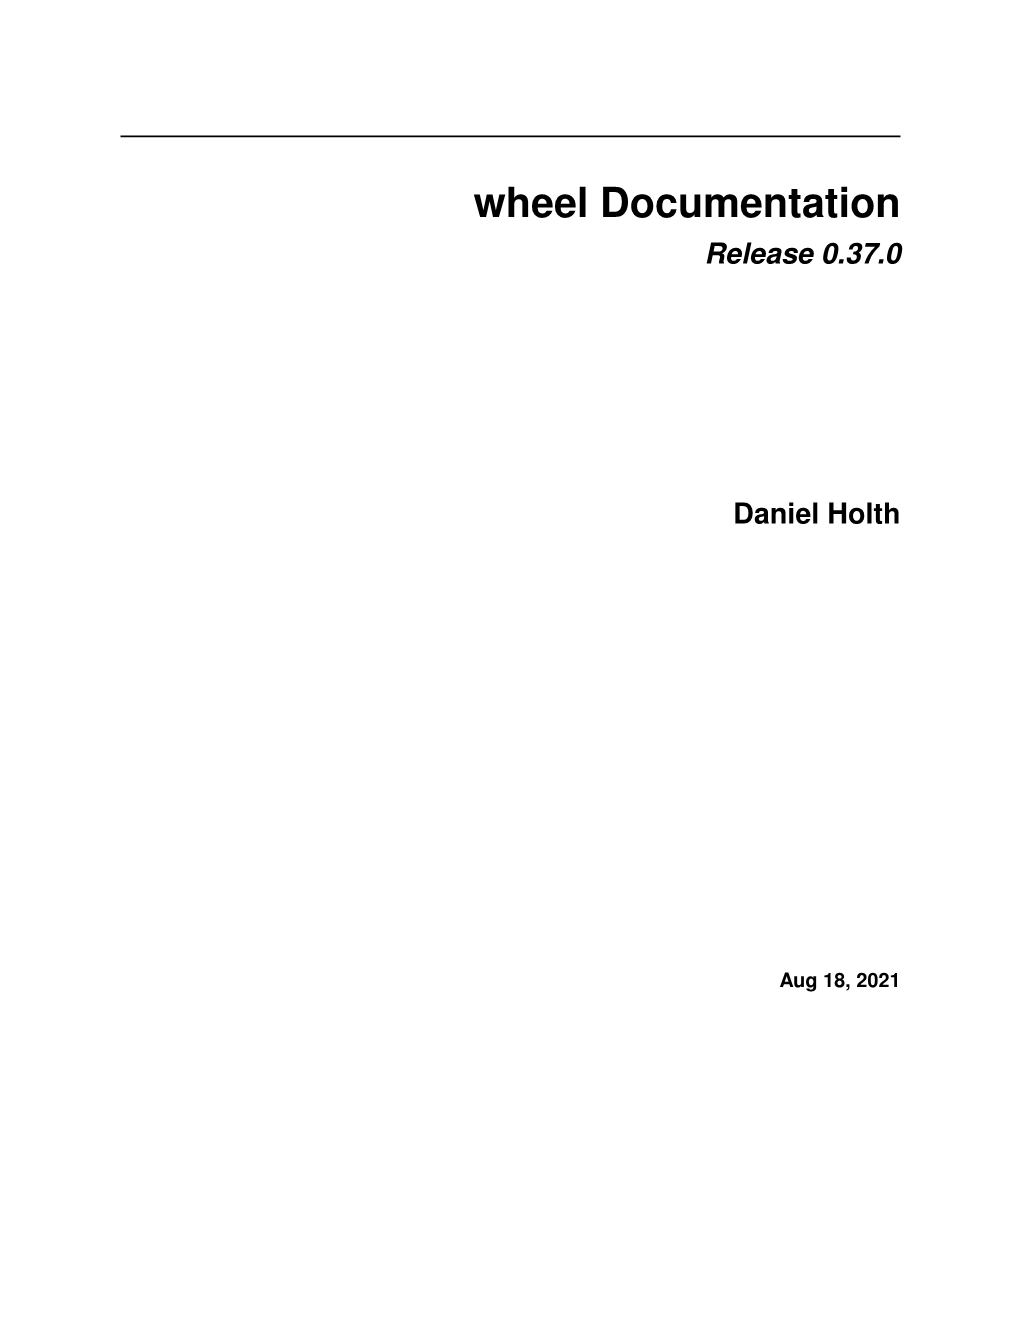 Wheel Documentation Release 0.37.0